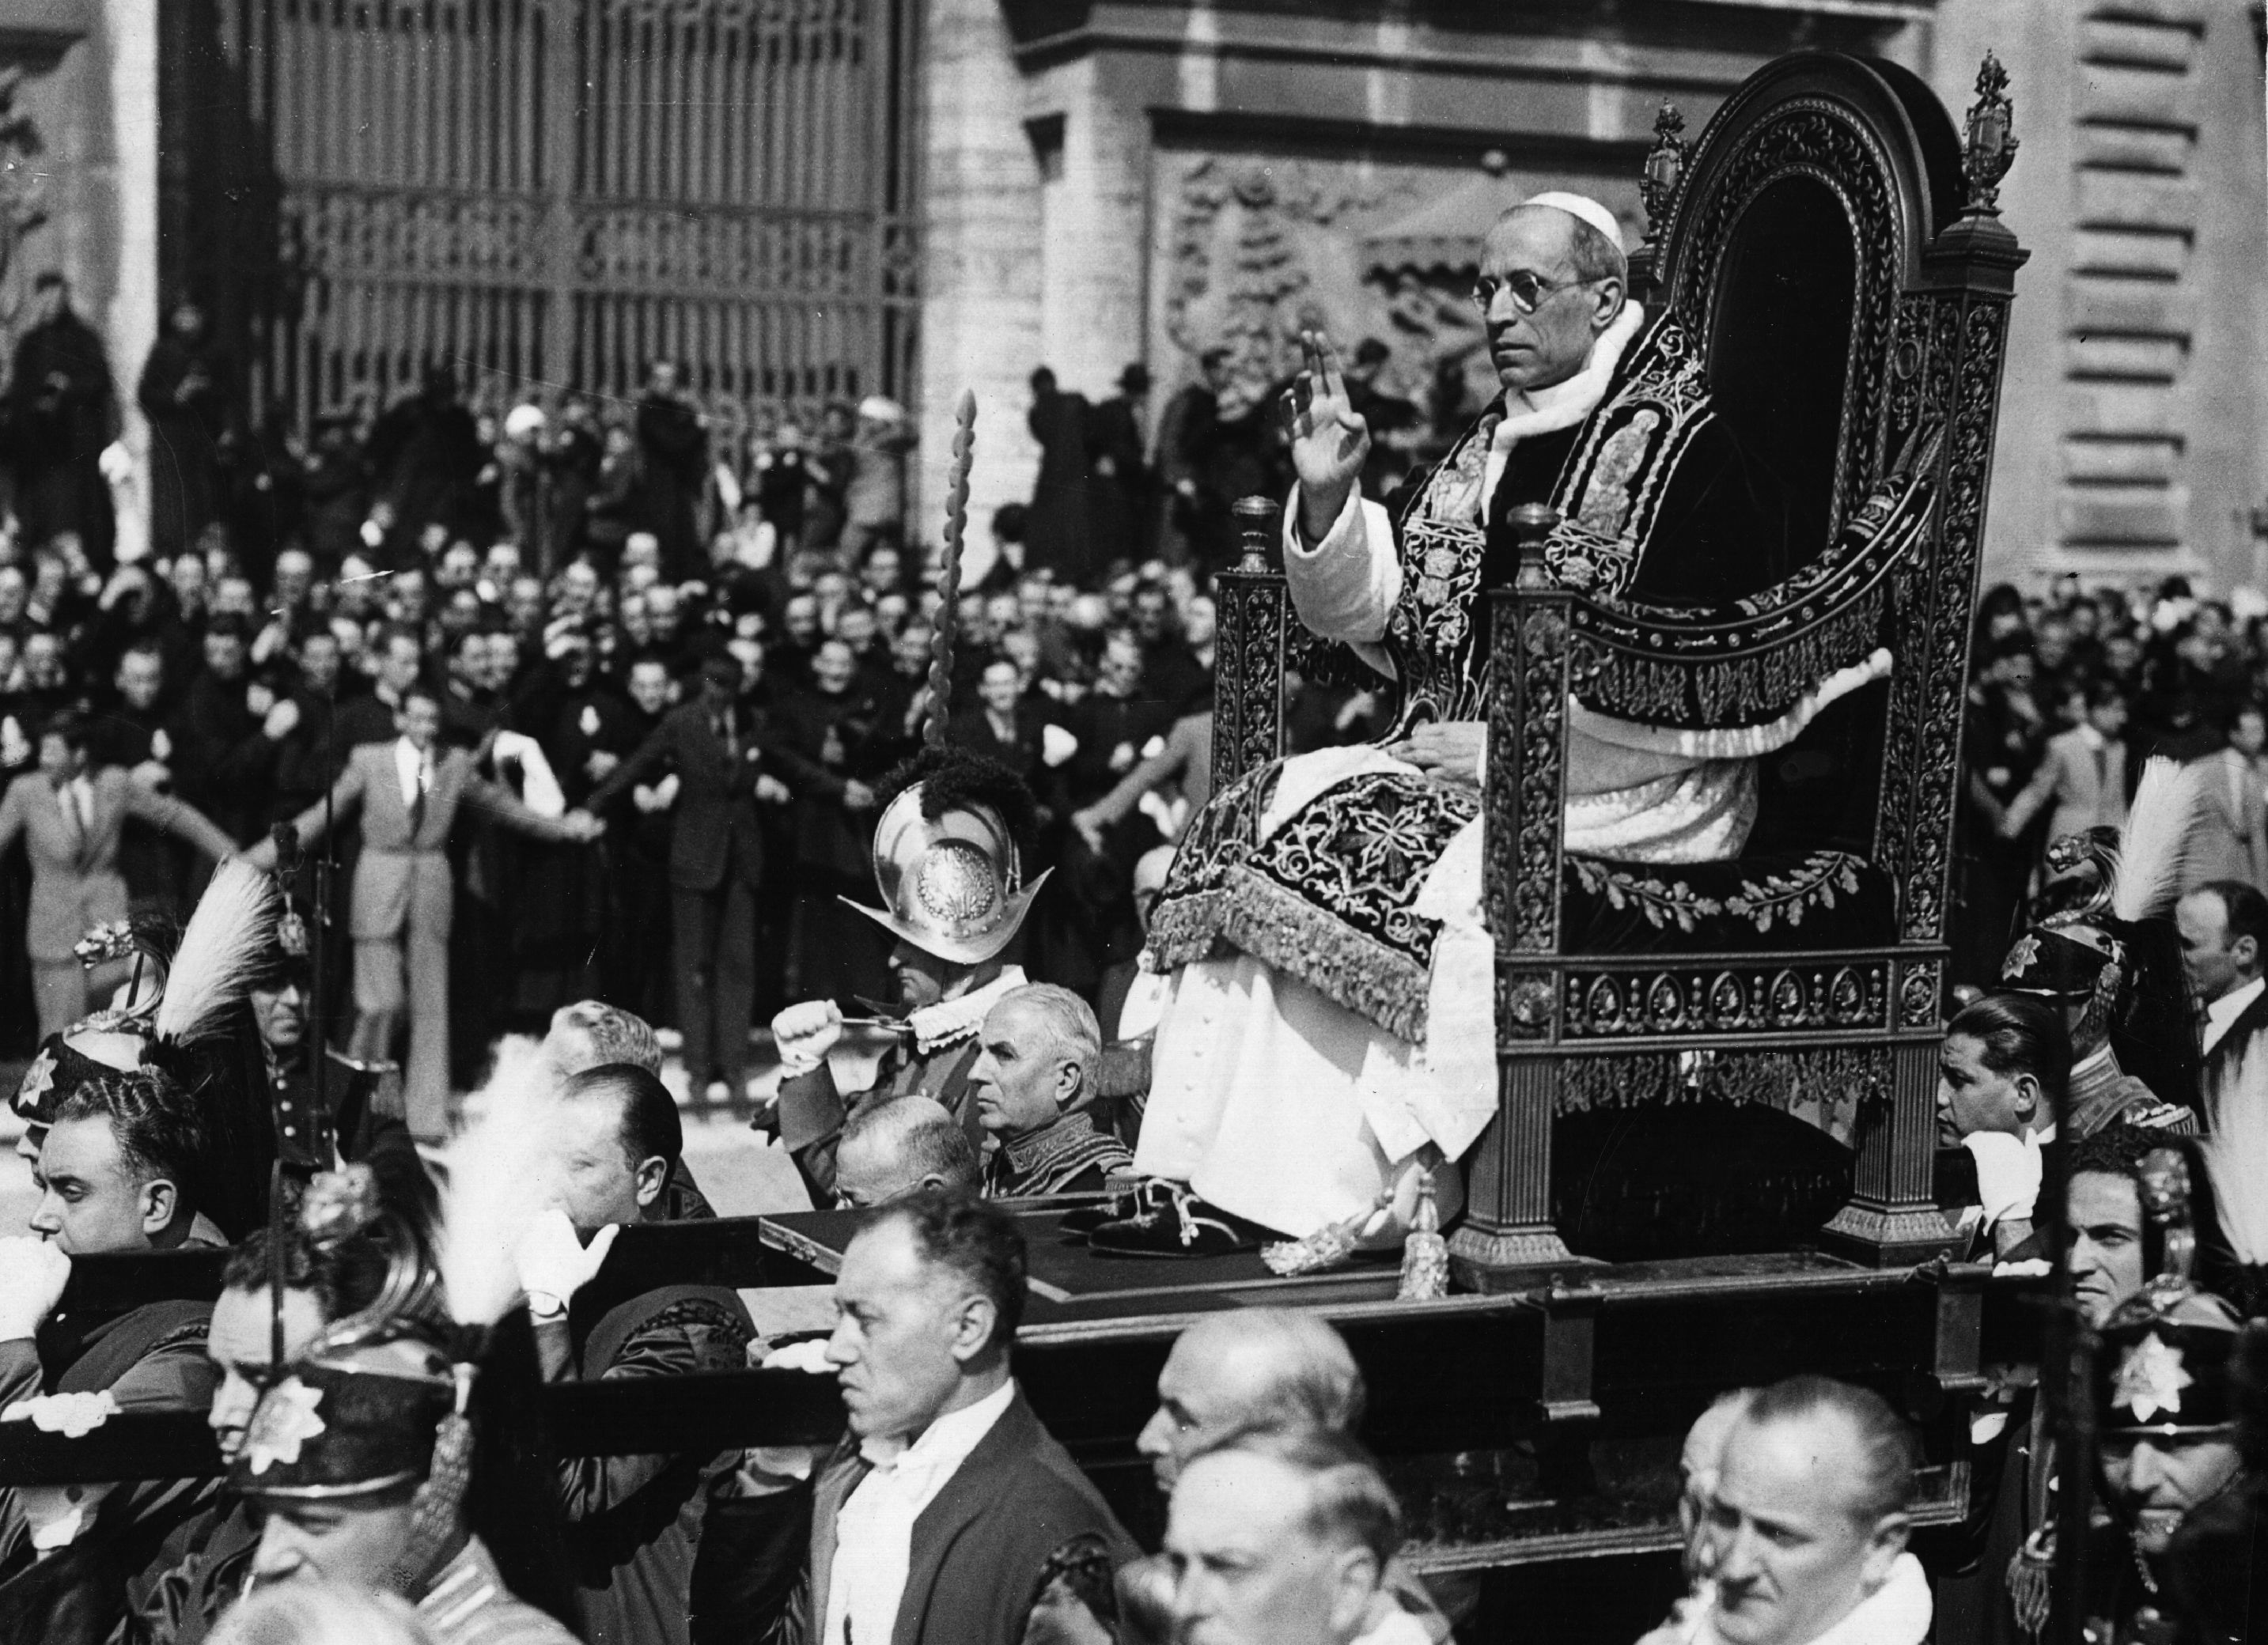 Pope Pius Vatican to open controversial WW2-era files |